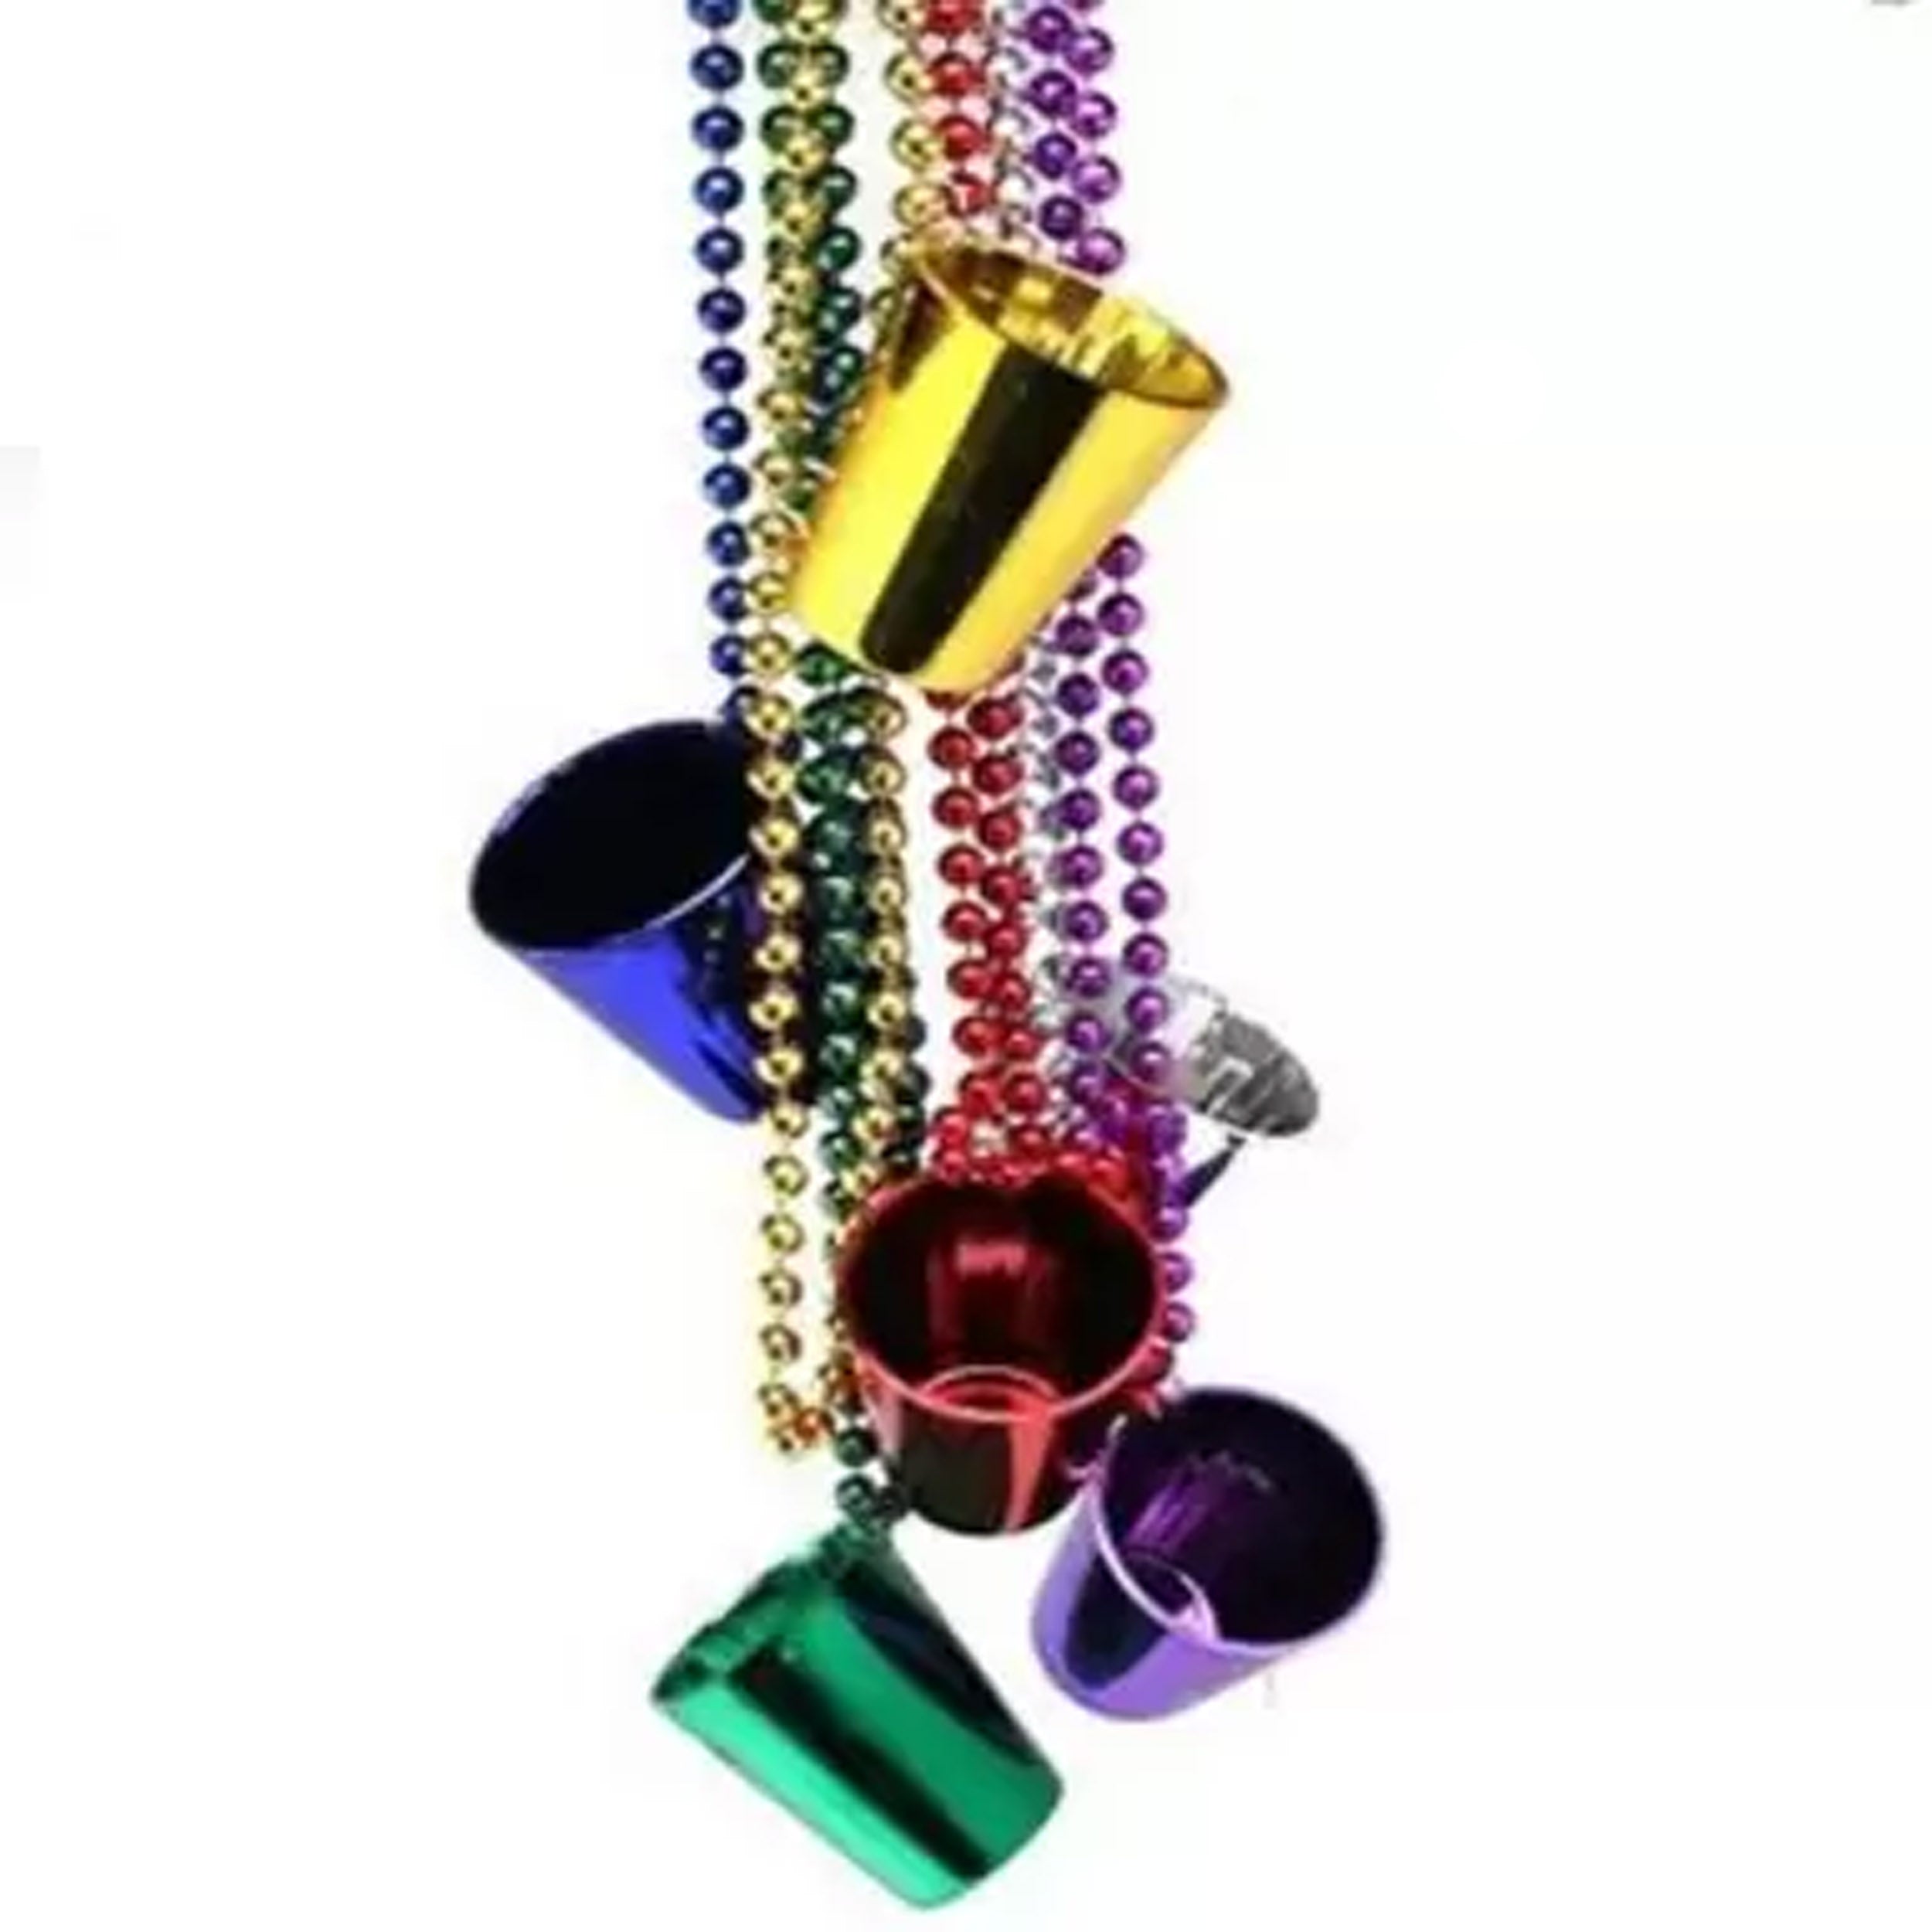 Glass Beads Necklaces kids toys (1 Dozen=$12.99)